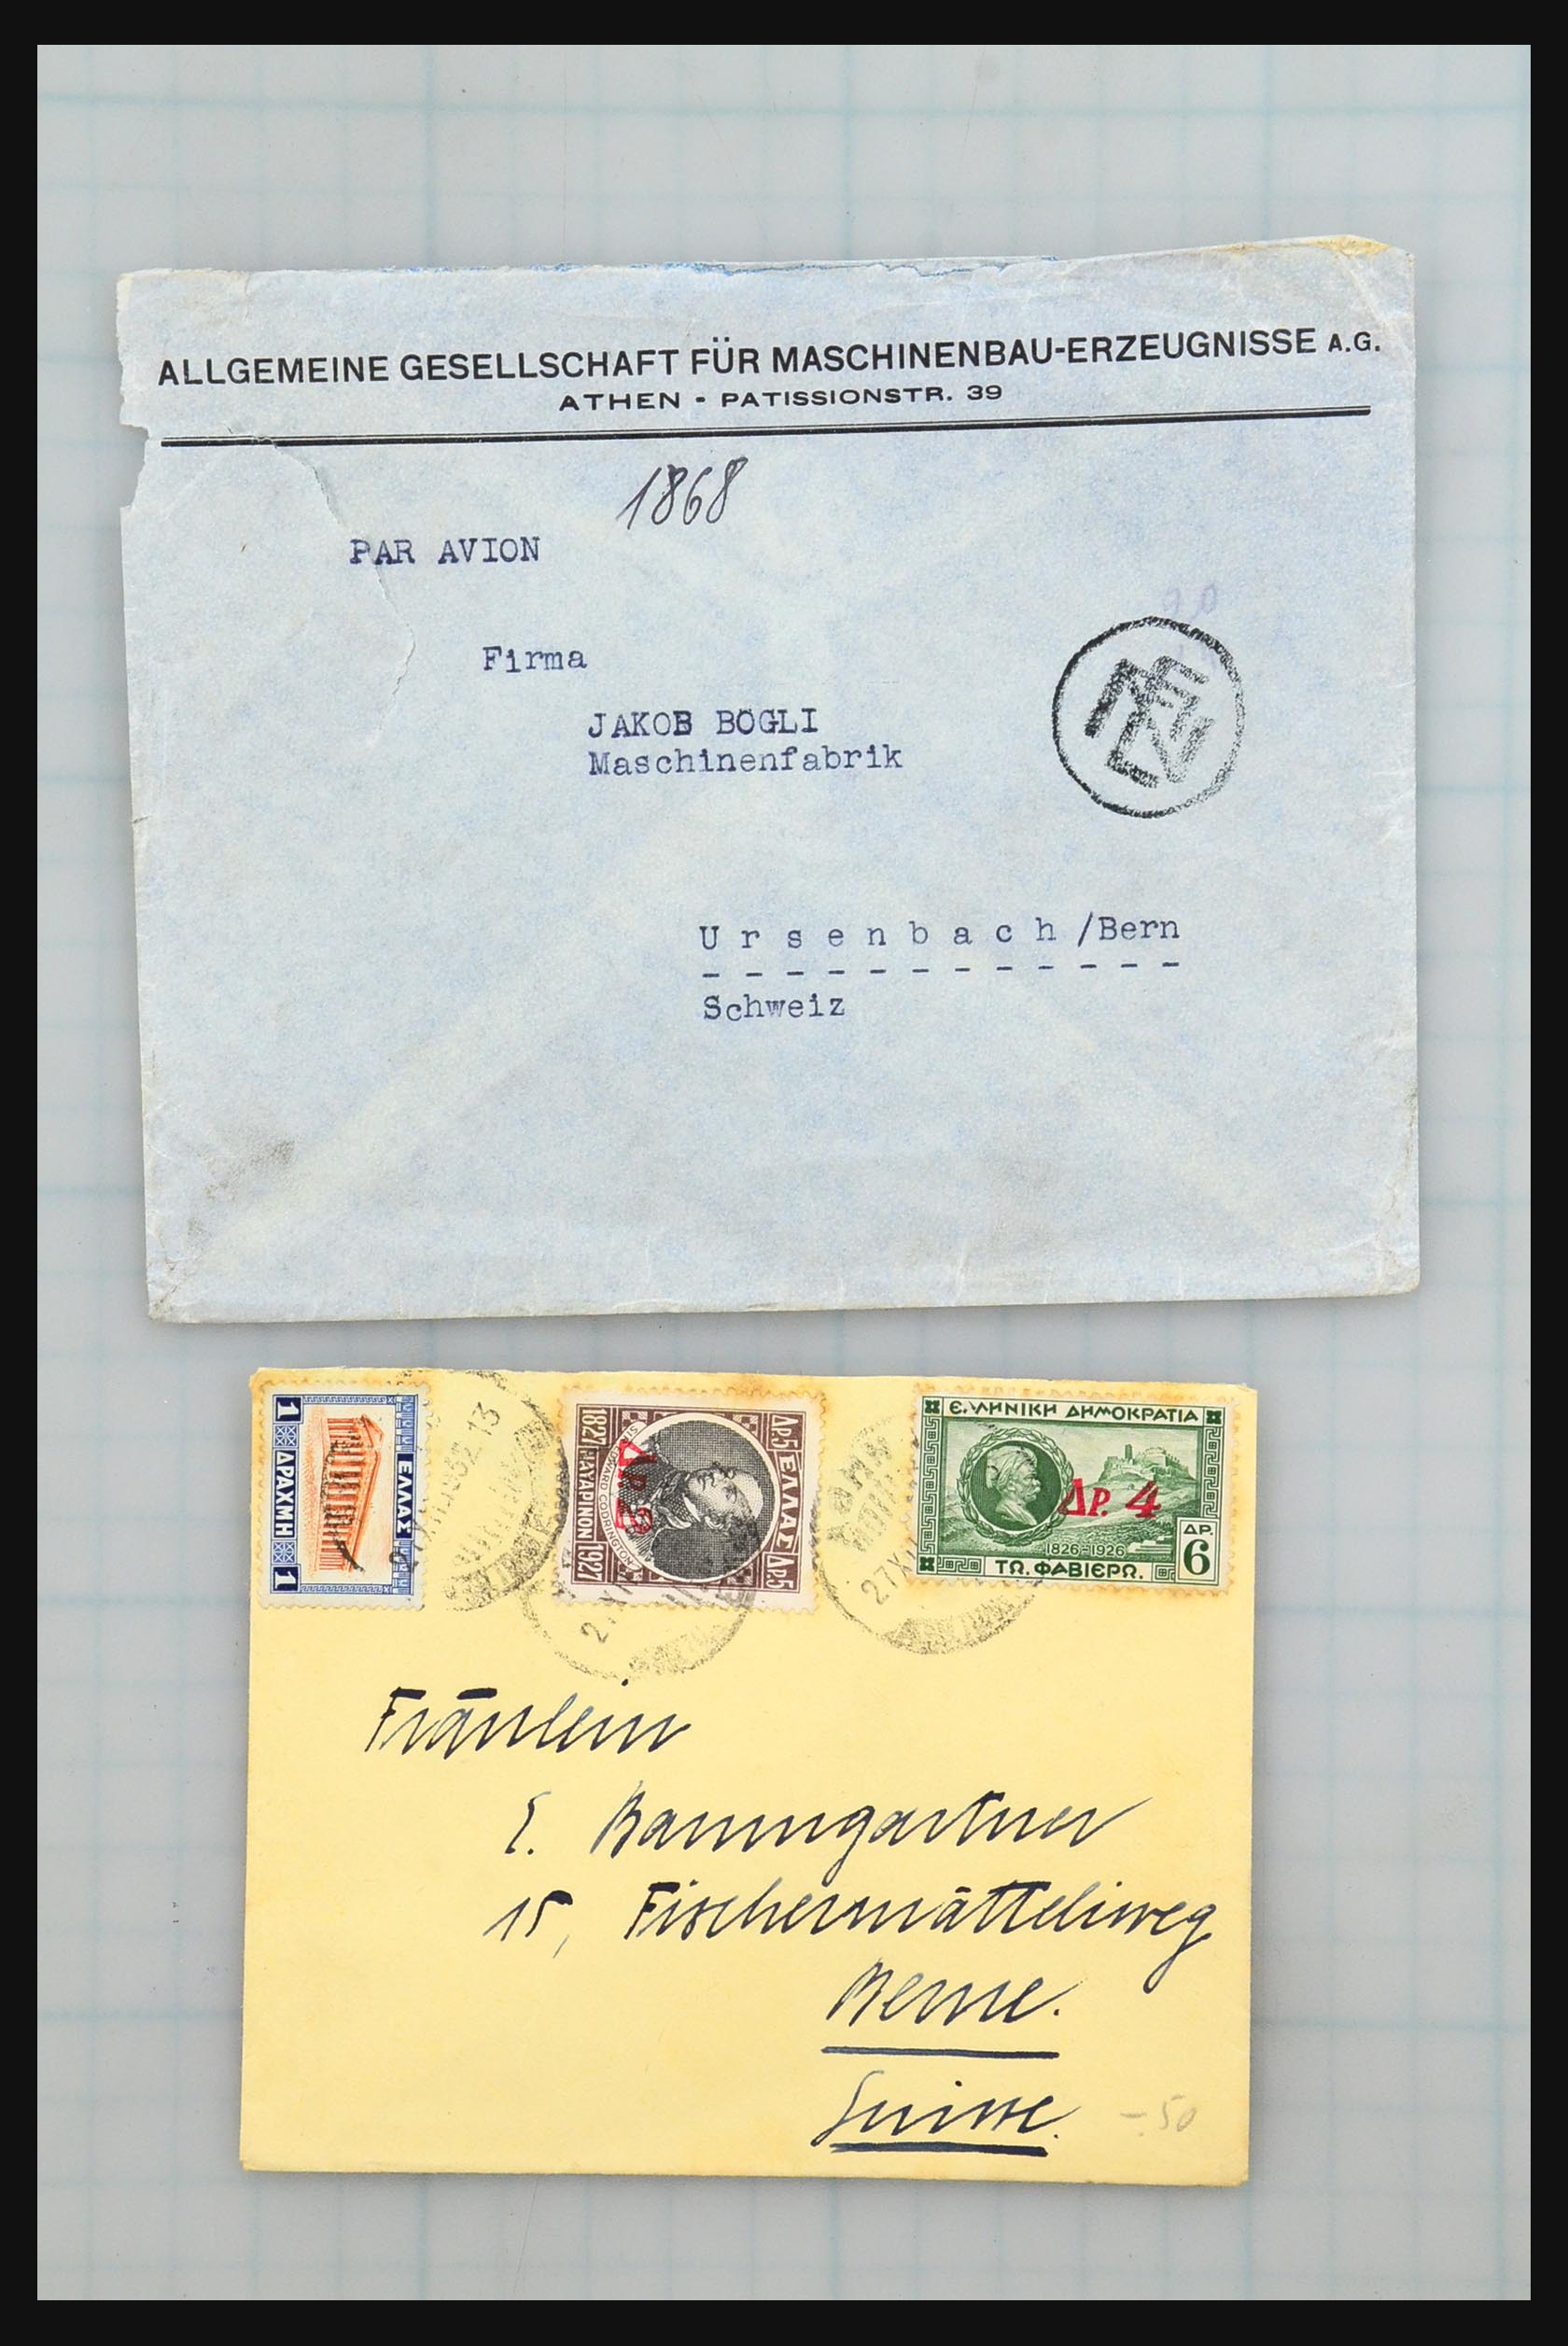 31358 014 - 31358 Portugal/Luxemburg/Griekenland brieven 1880-1960.